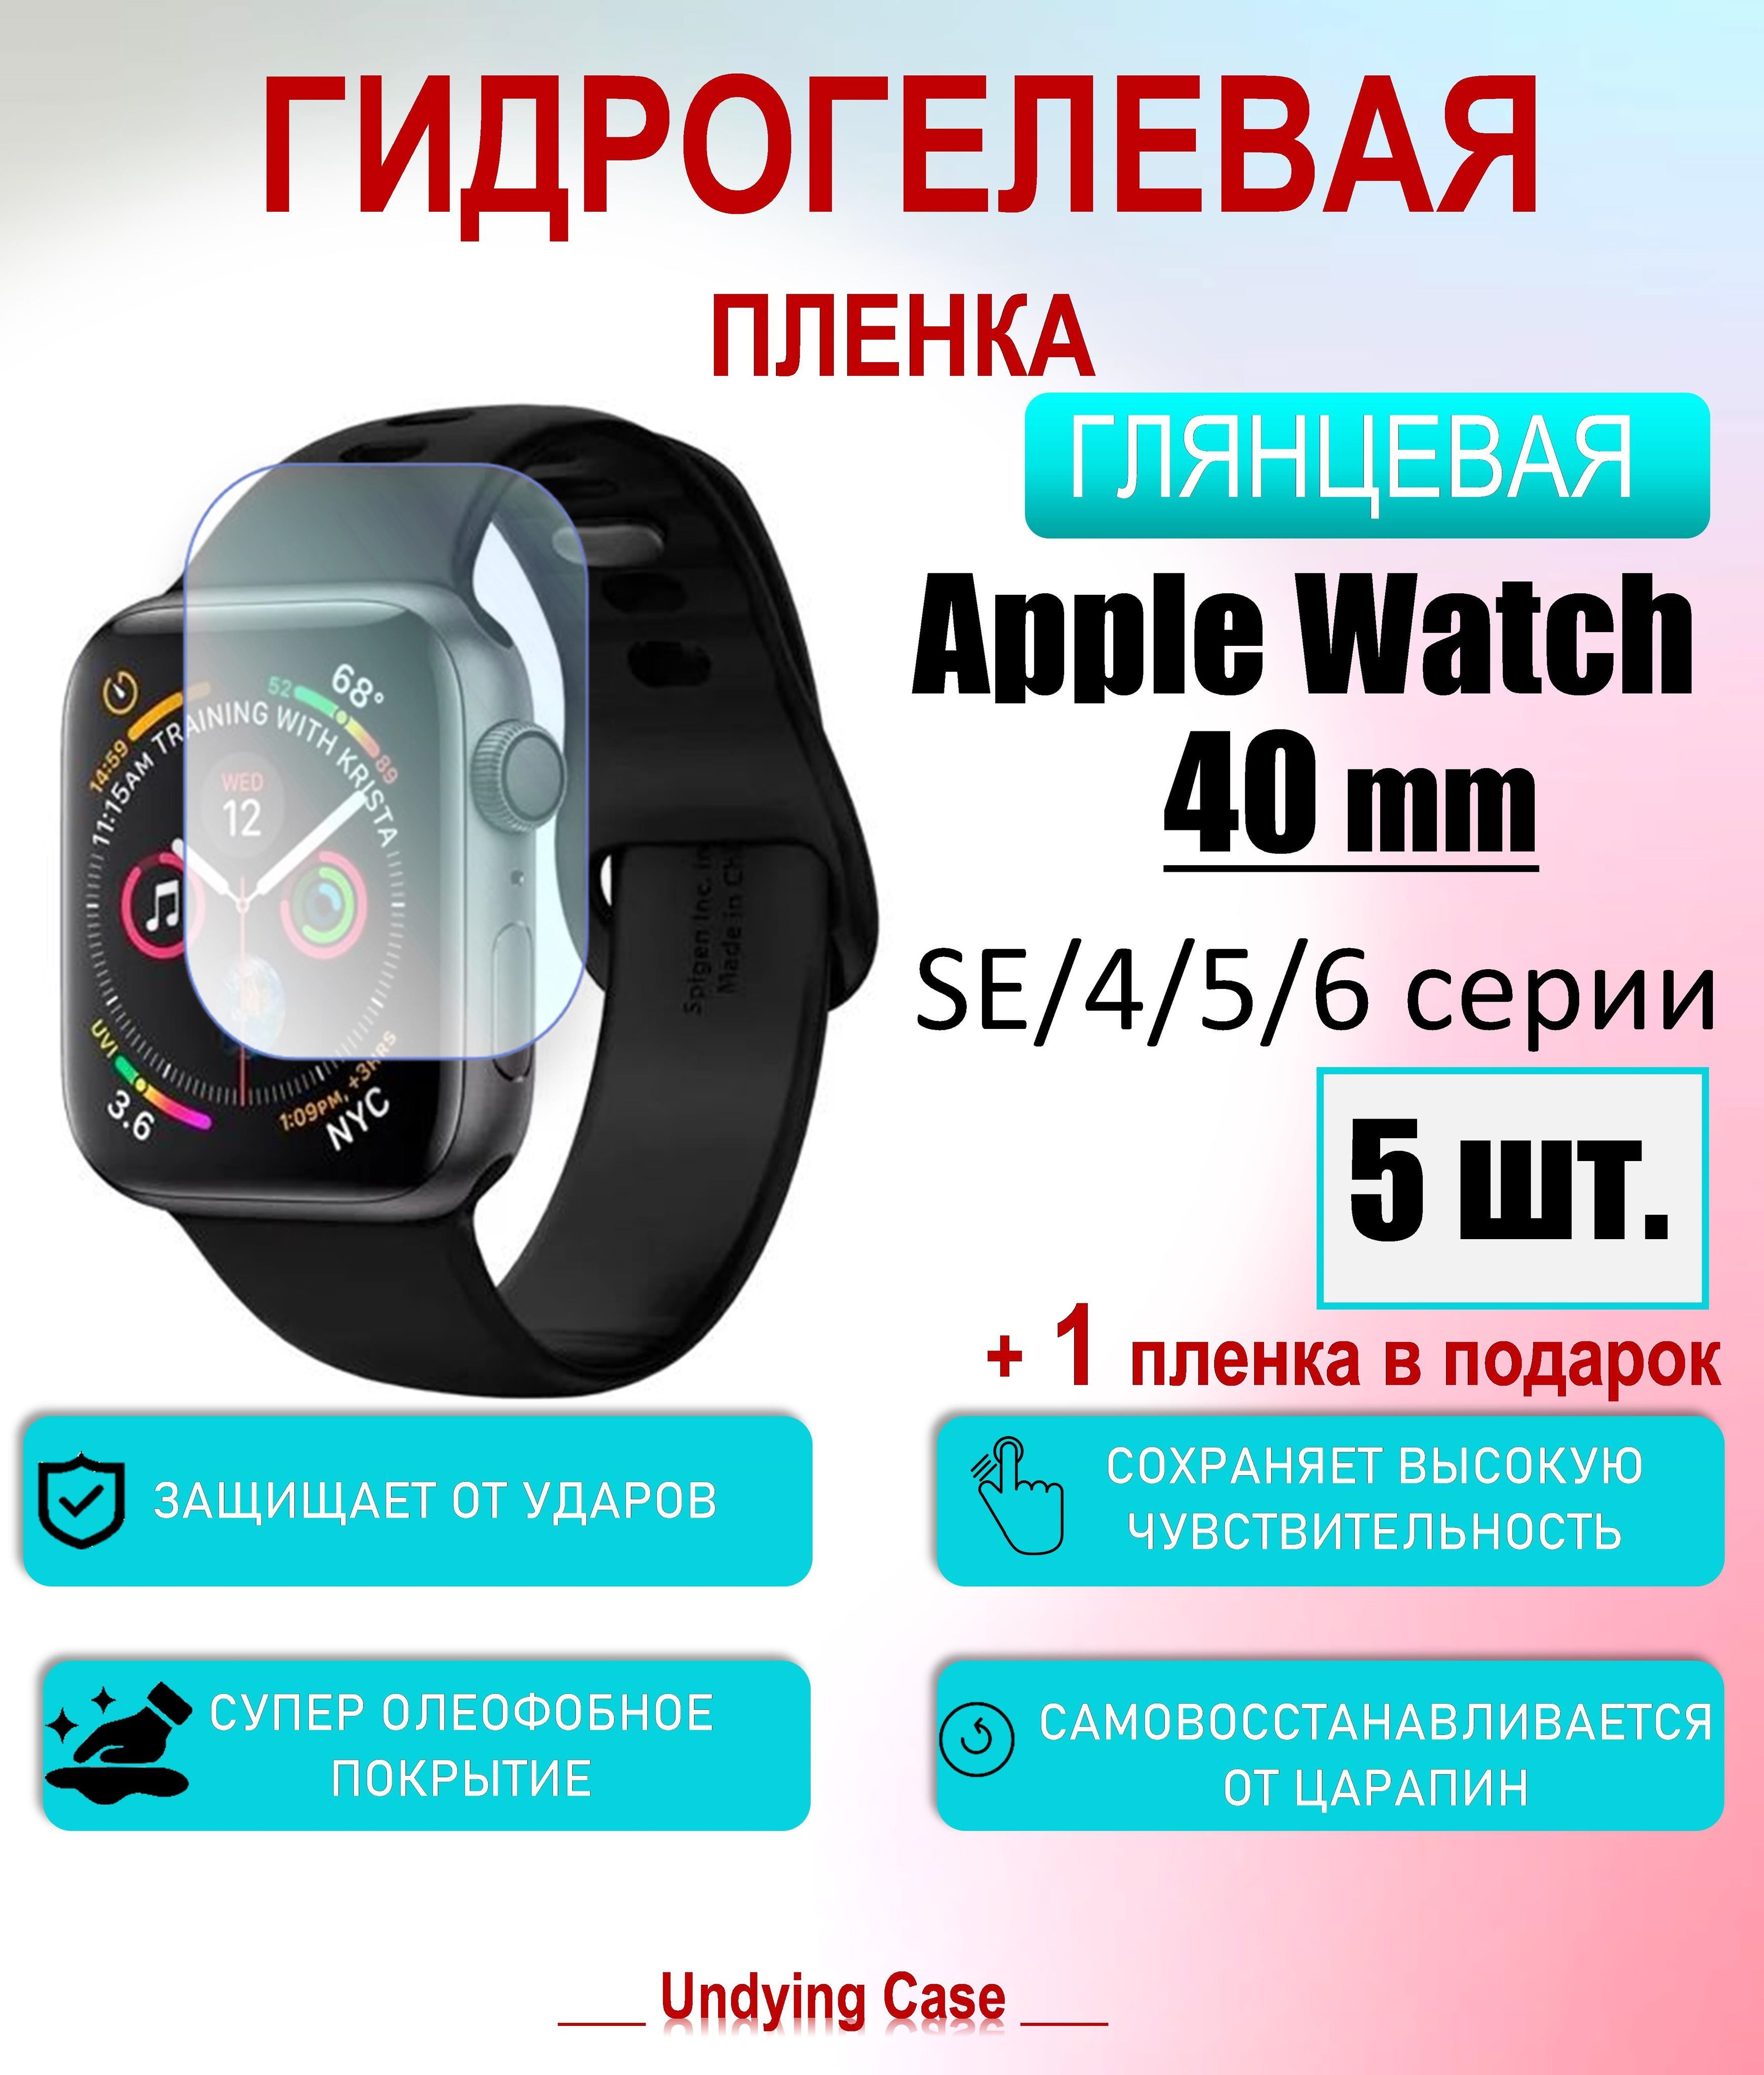 Упаковка Apple Watch